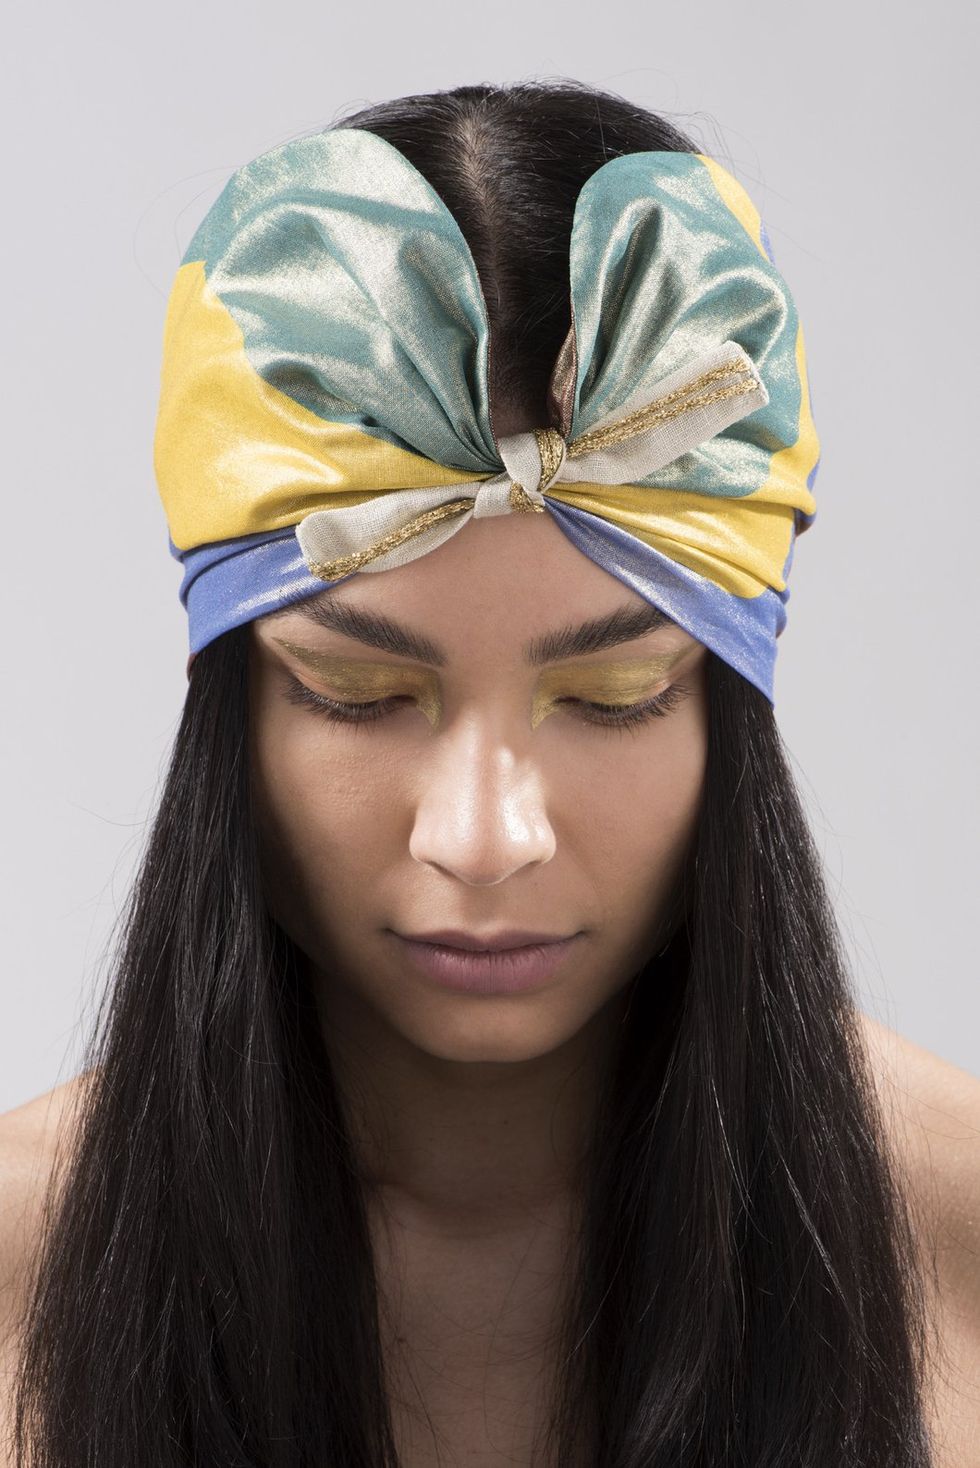 Metti da parte il cappello a tesa larga, è scoppiata la mania per gli accessori per capelli dalle forme vintage come fasce e turbanti.